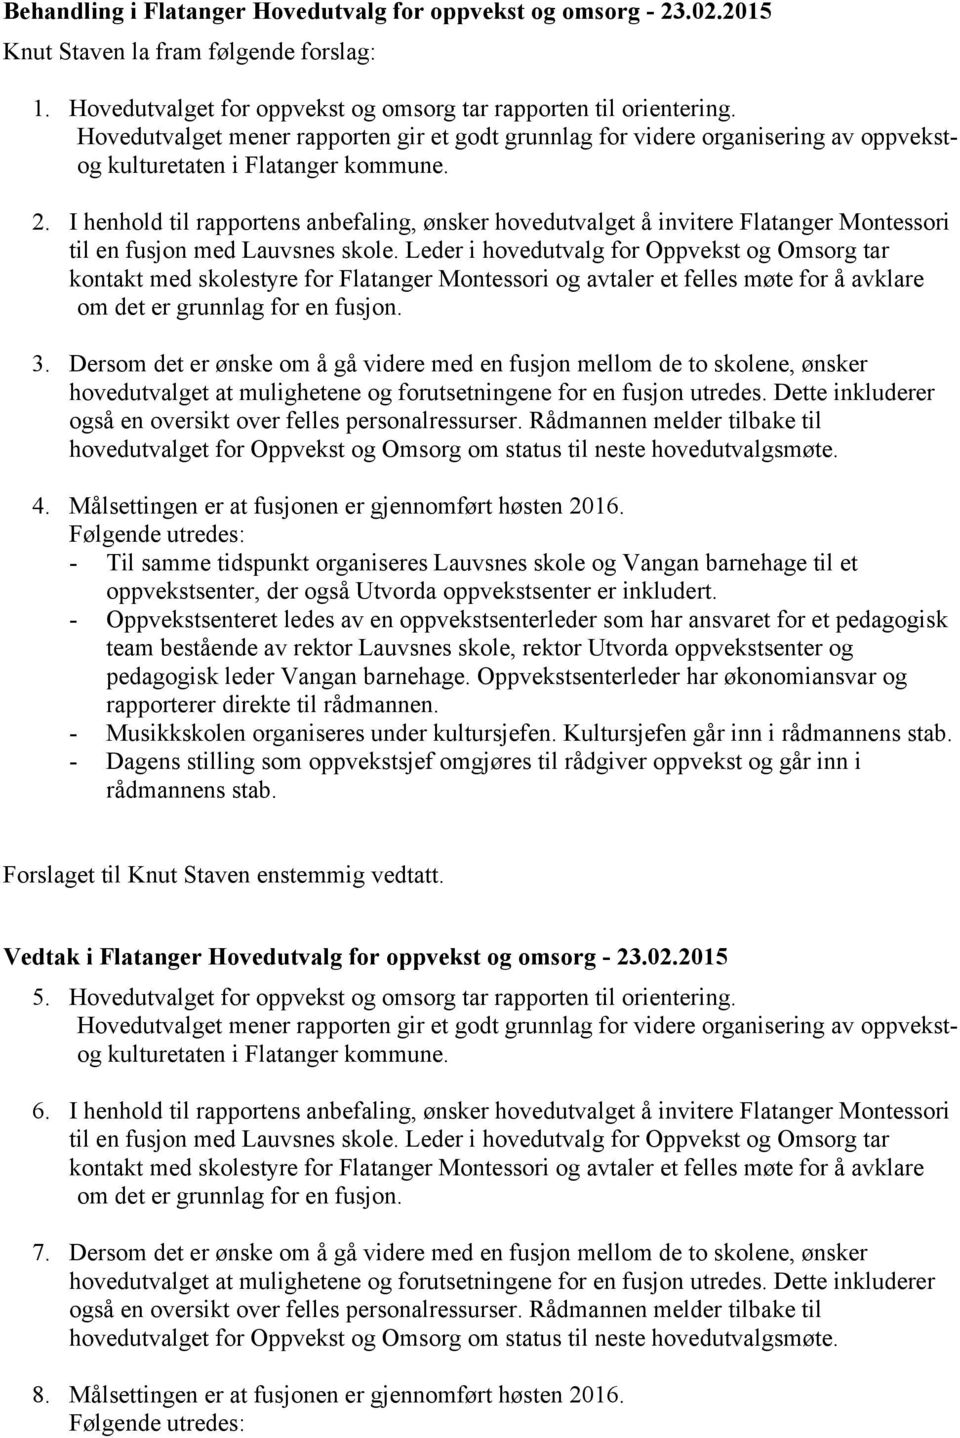 I henhold til rapportens anbefaling, ønsker hovedutvalget å invitere Flatanger Montessori til en fusjon med Lauvsnes skole.